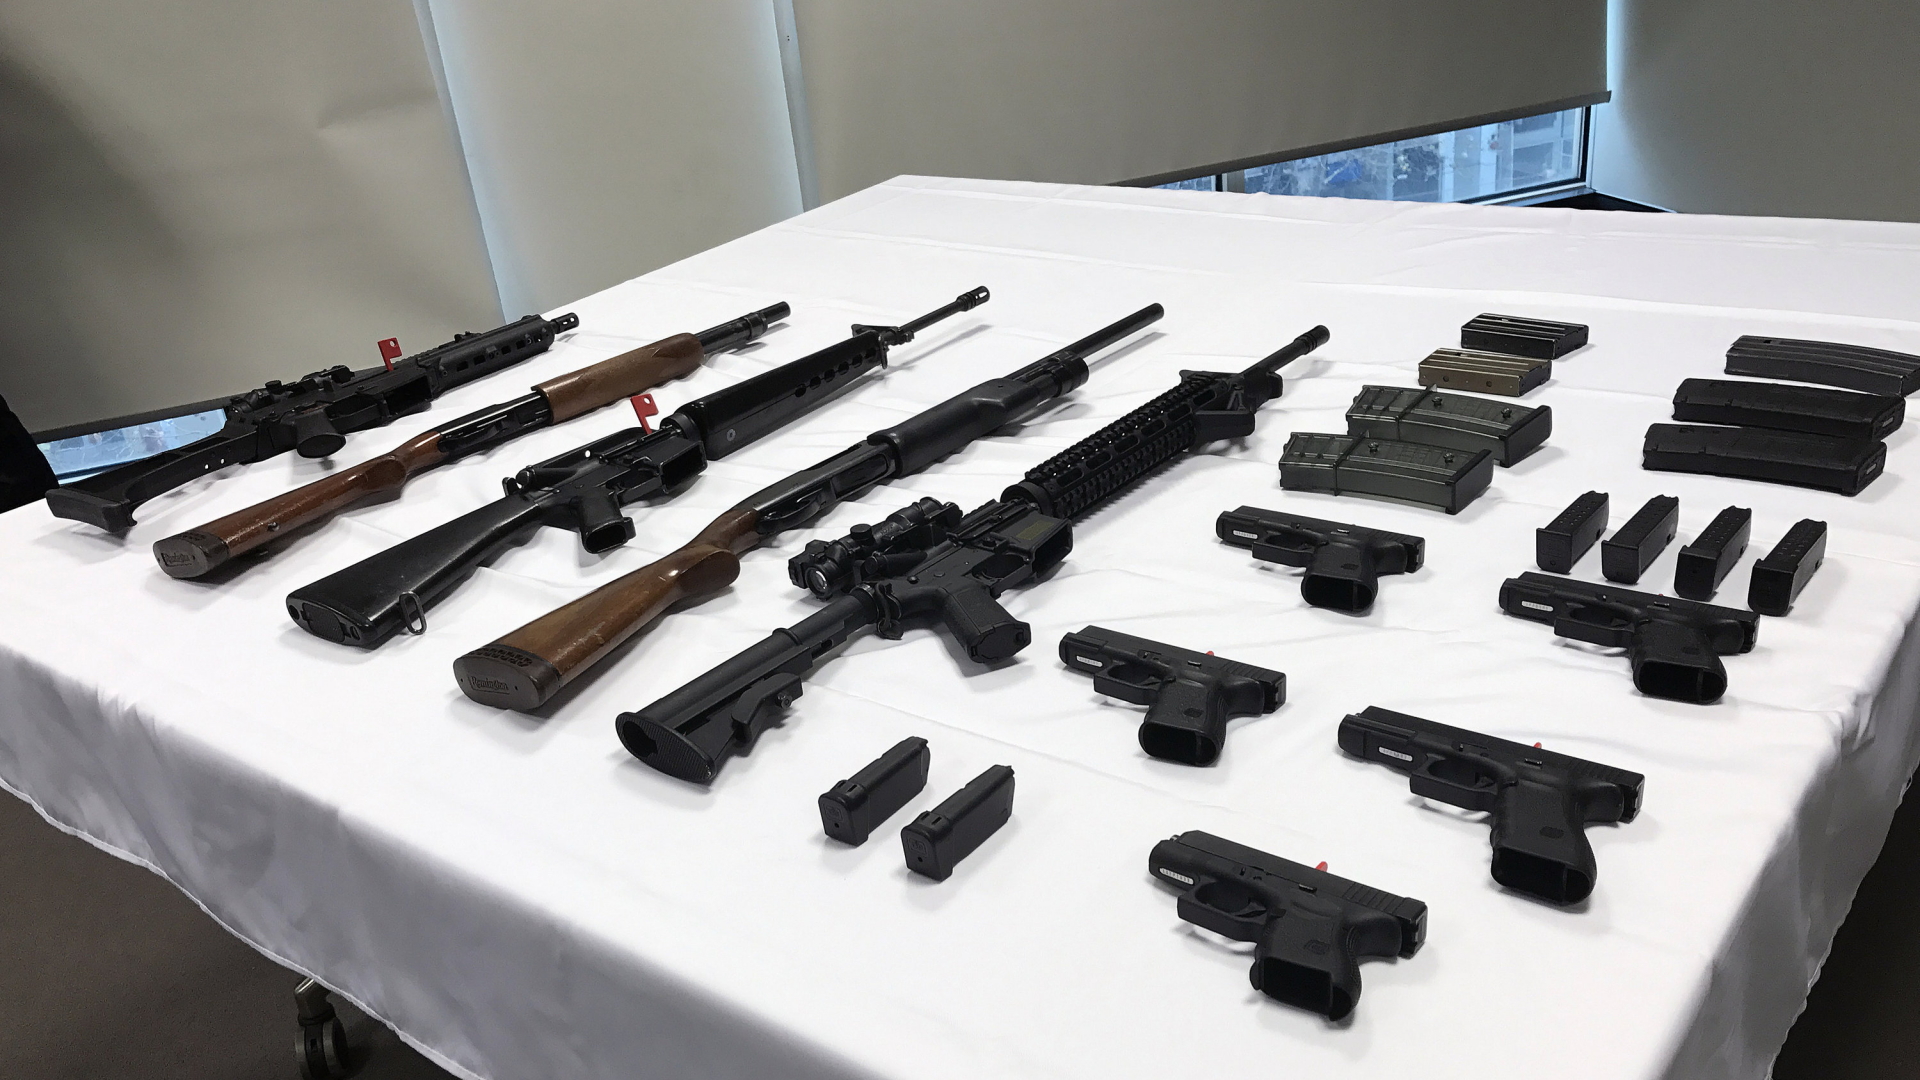 Verschiedene Gehwehre und Pistolen liegen am 16.06.2017 in Canberra (Australien) auf einem Tisch. | dpa